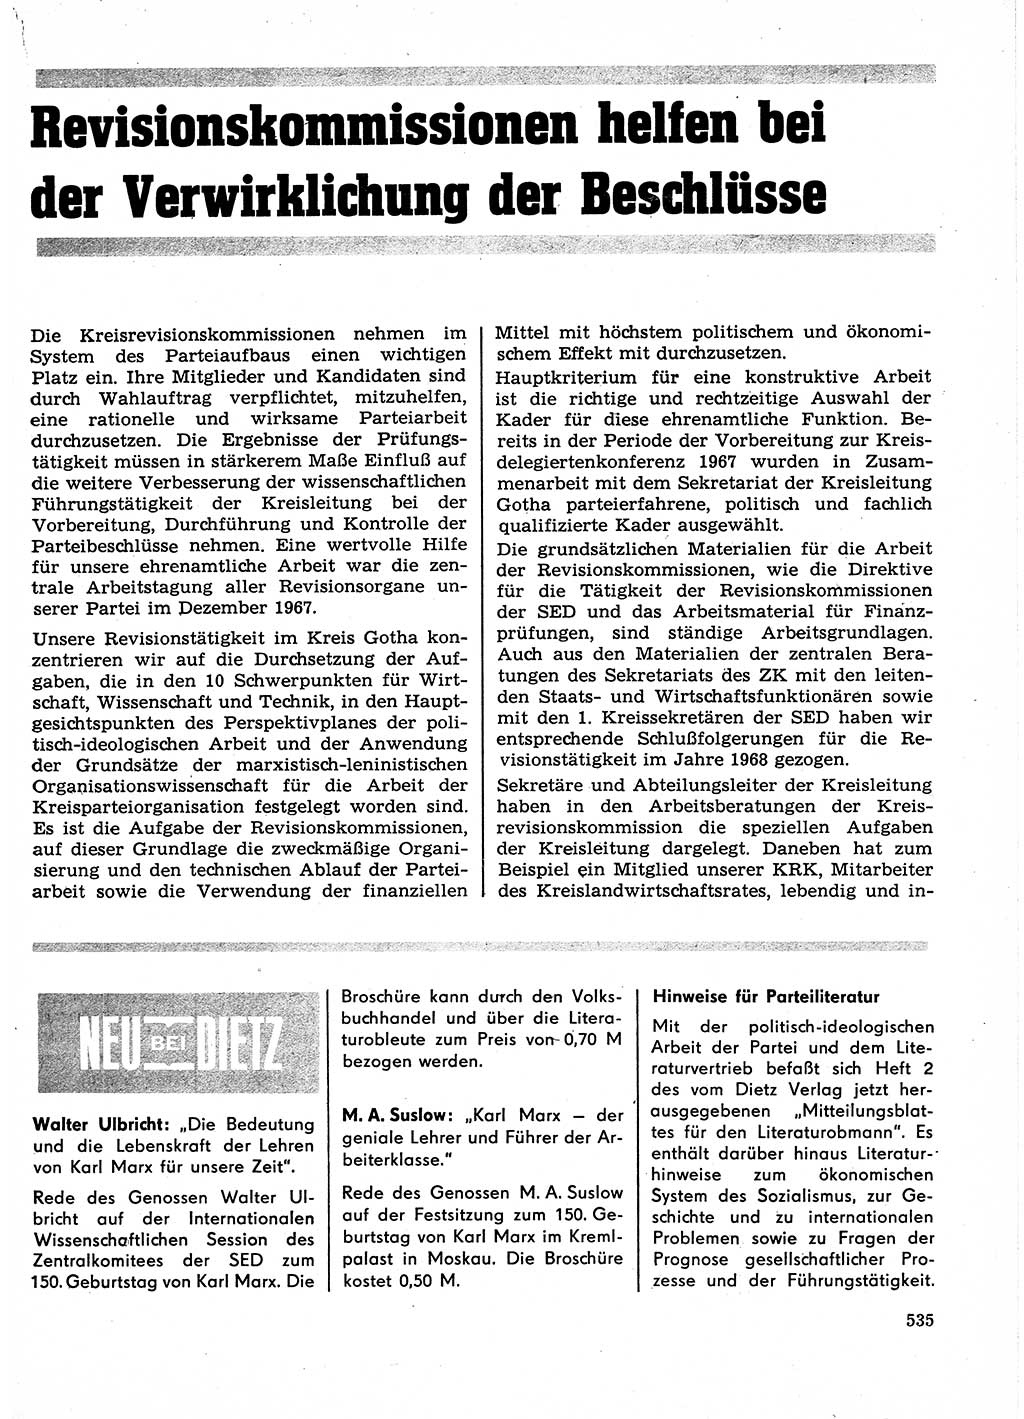 Neuer Weg (NW), Organ des Zentralkomitees (ZK) der SED (Sozialistische Einheitspartei Deutschlands) für Fragen des Parteilebens, 23. Jahrgang [Deutsche Demokratische Republik (DDR)] 1968, Seite 535 (NW ZK SED DDR 1968, S. 535)